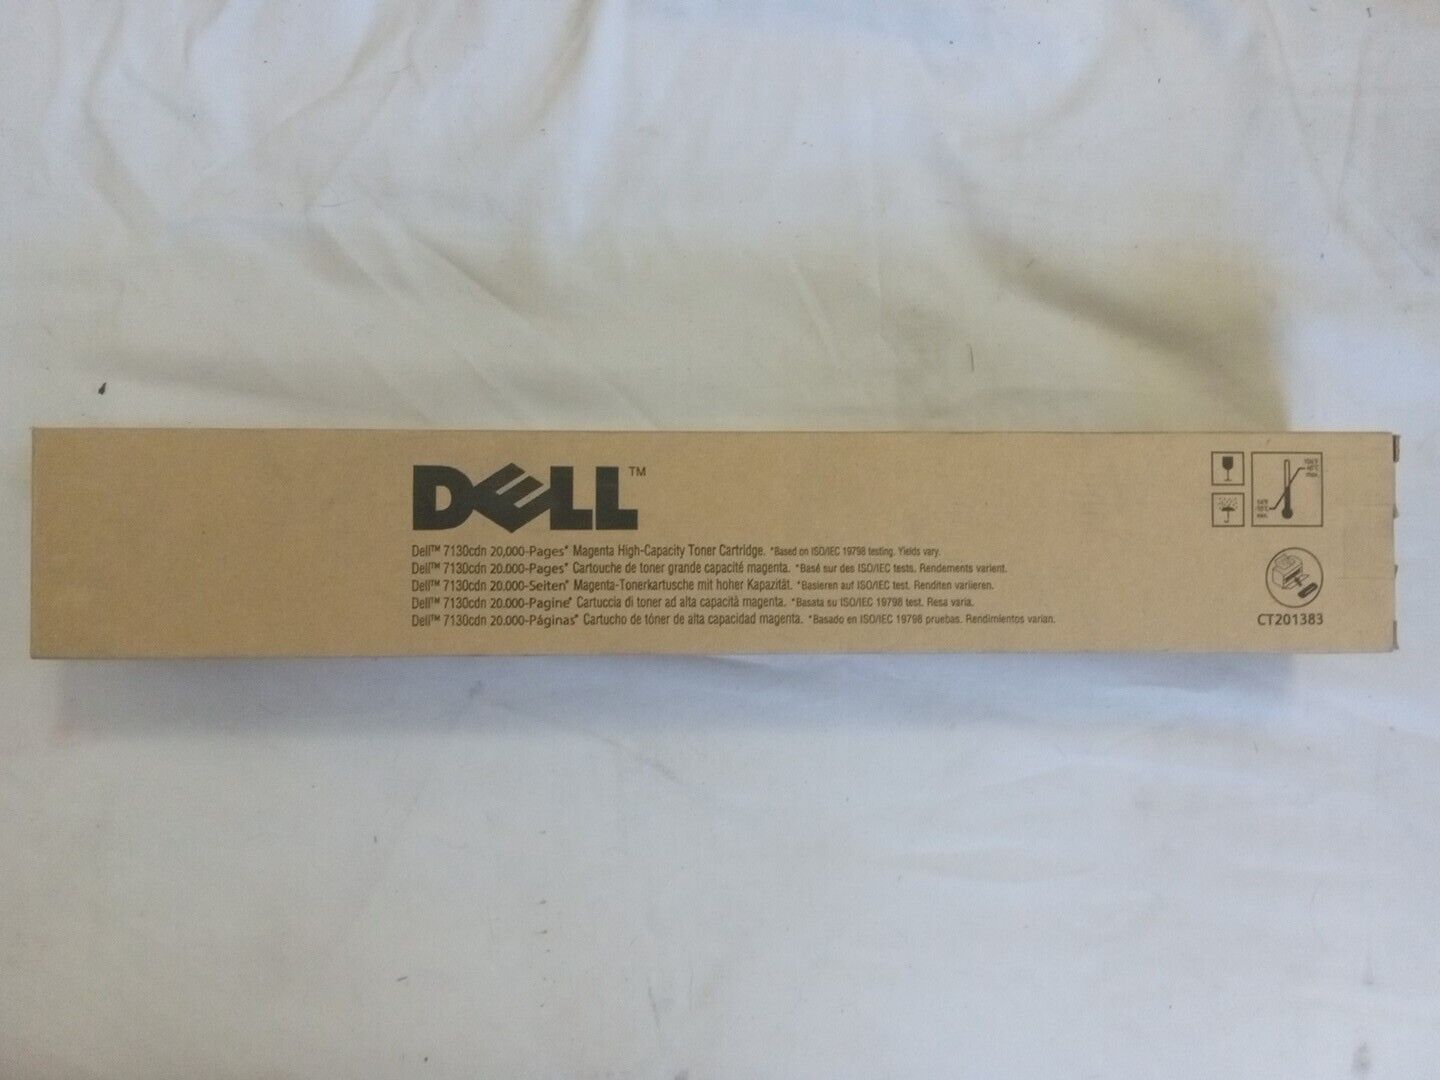 NEW SEALED Dell 7FY16 7130cdn Color Laser Printer MAGENTA Toner 20,000 Pages